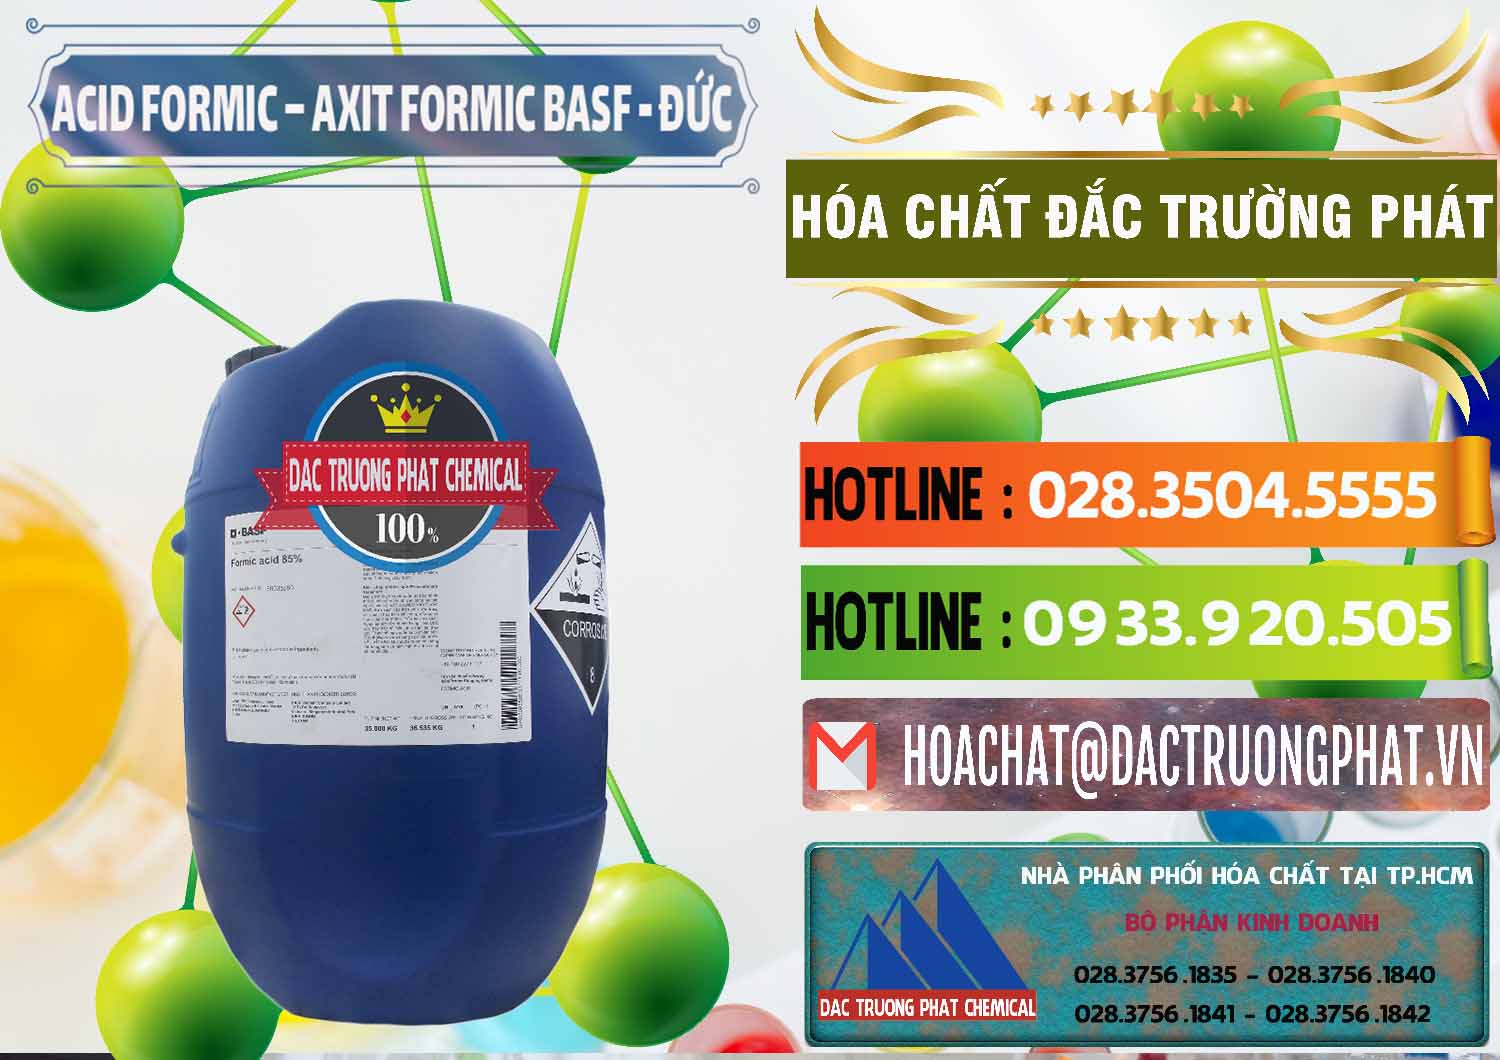 Chuyên kinh doanh & bán Acid Formic - Axit Formic BASF Đức Germany - 0028 - Đơn vị kinh doanh & phân phối hóa chất tại TP.HCM - cungcaphoachat.com.vn